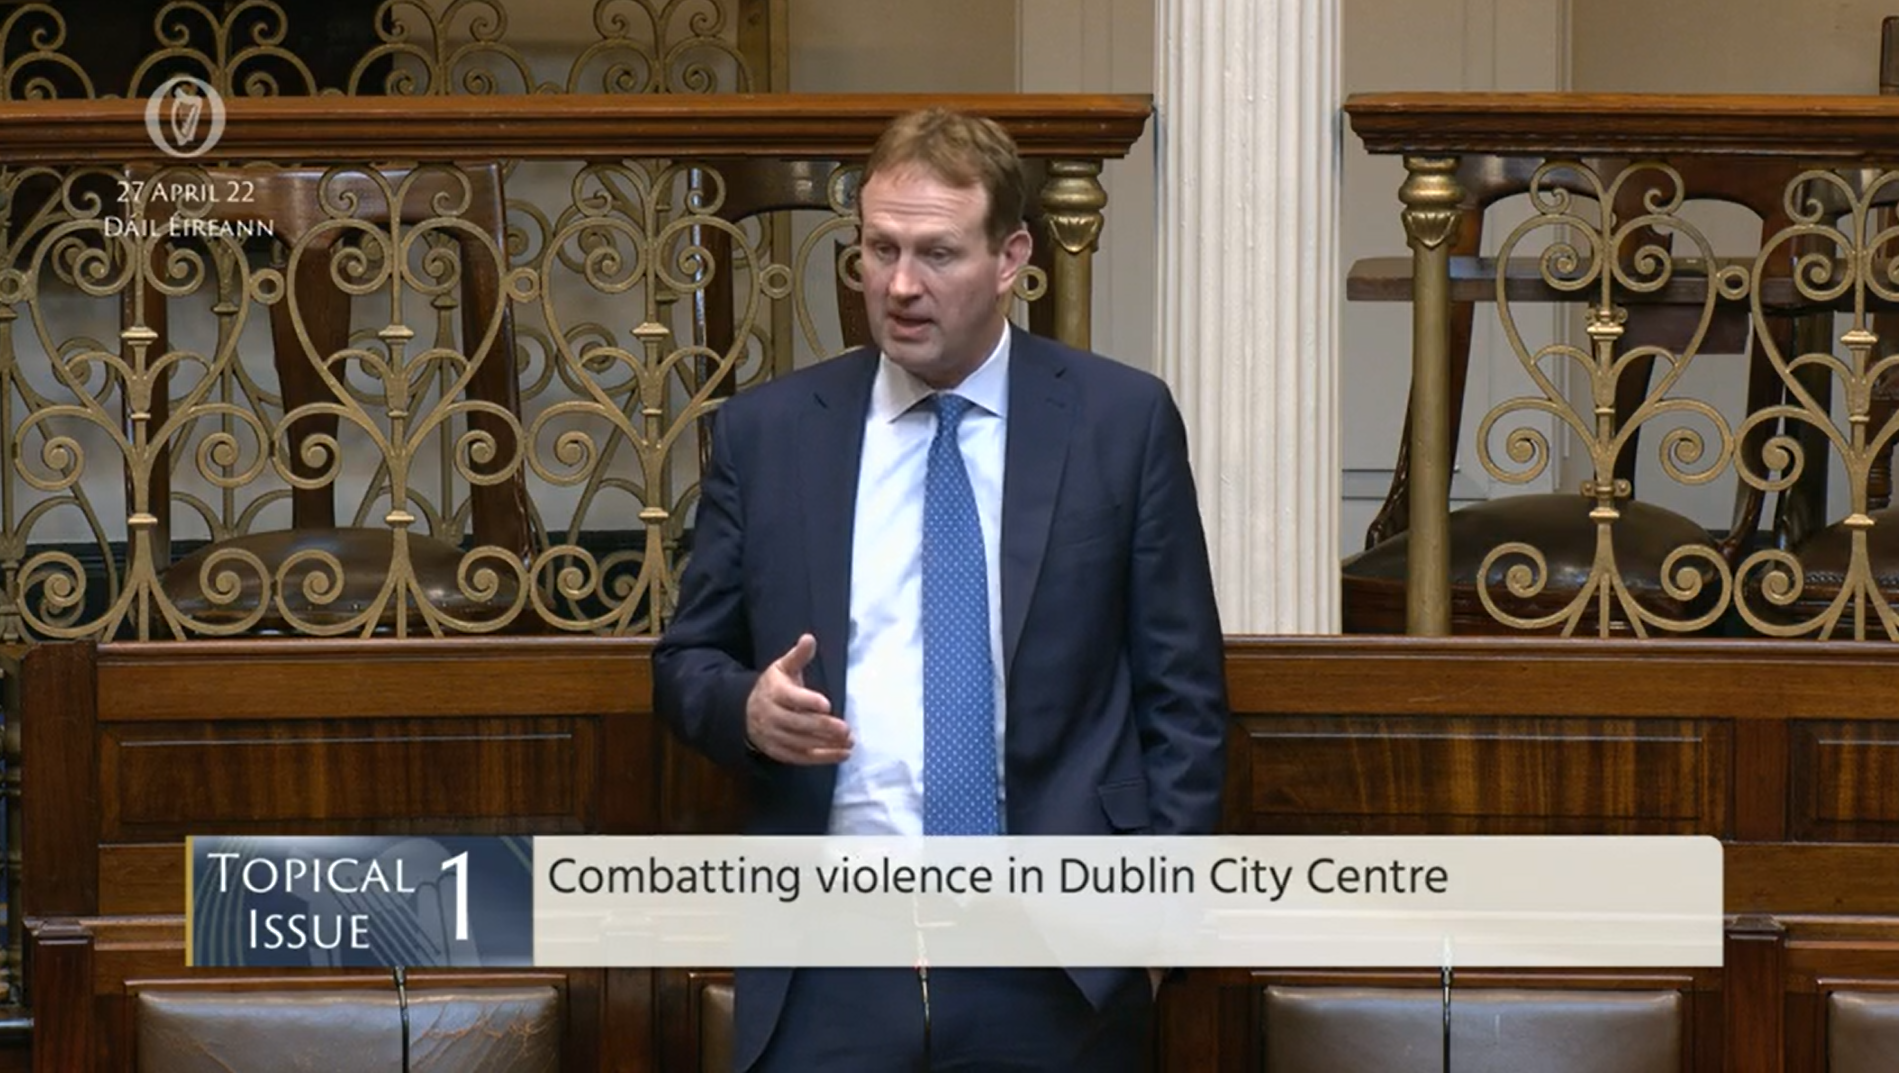 Fianna Fáil TD Jim O’Callaghan speaking in the Dáil. Image: Oireachtas.